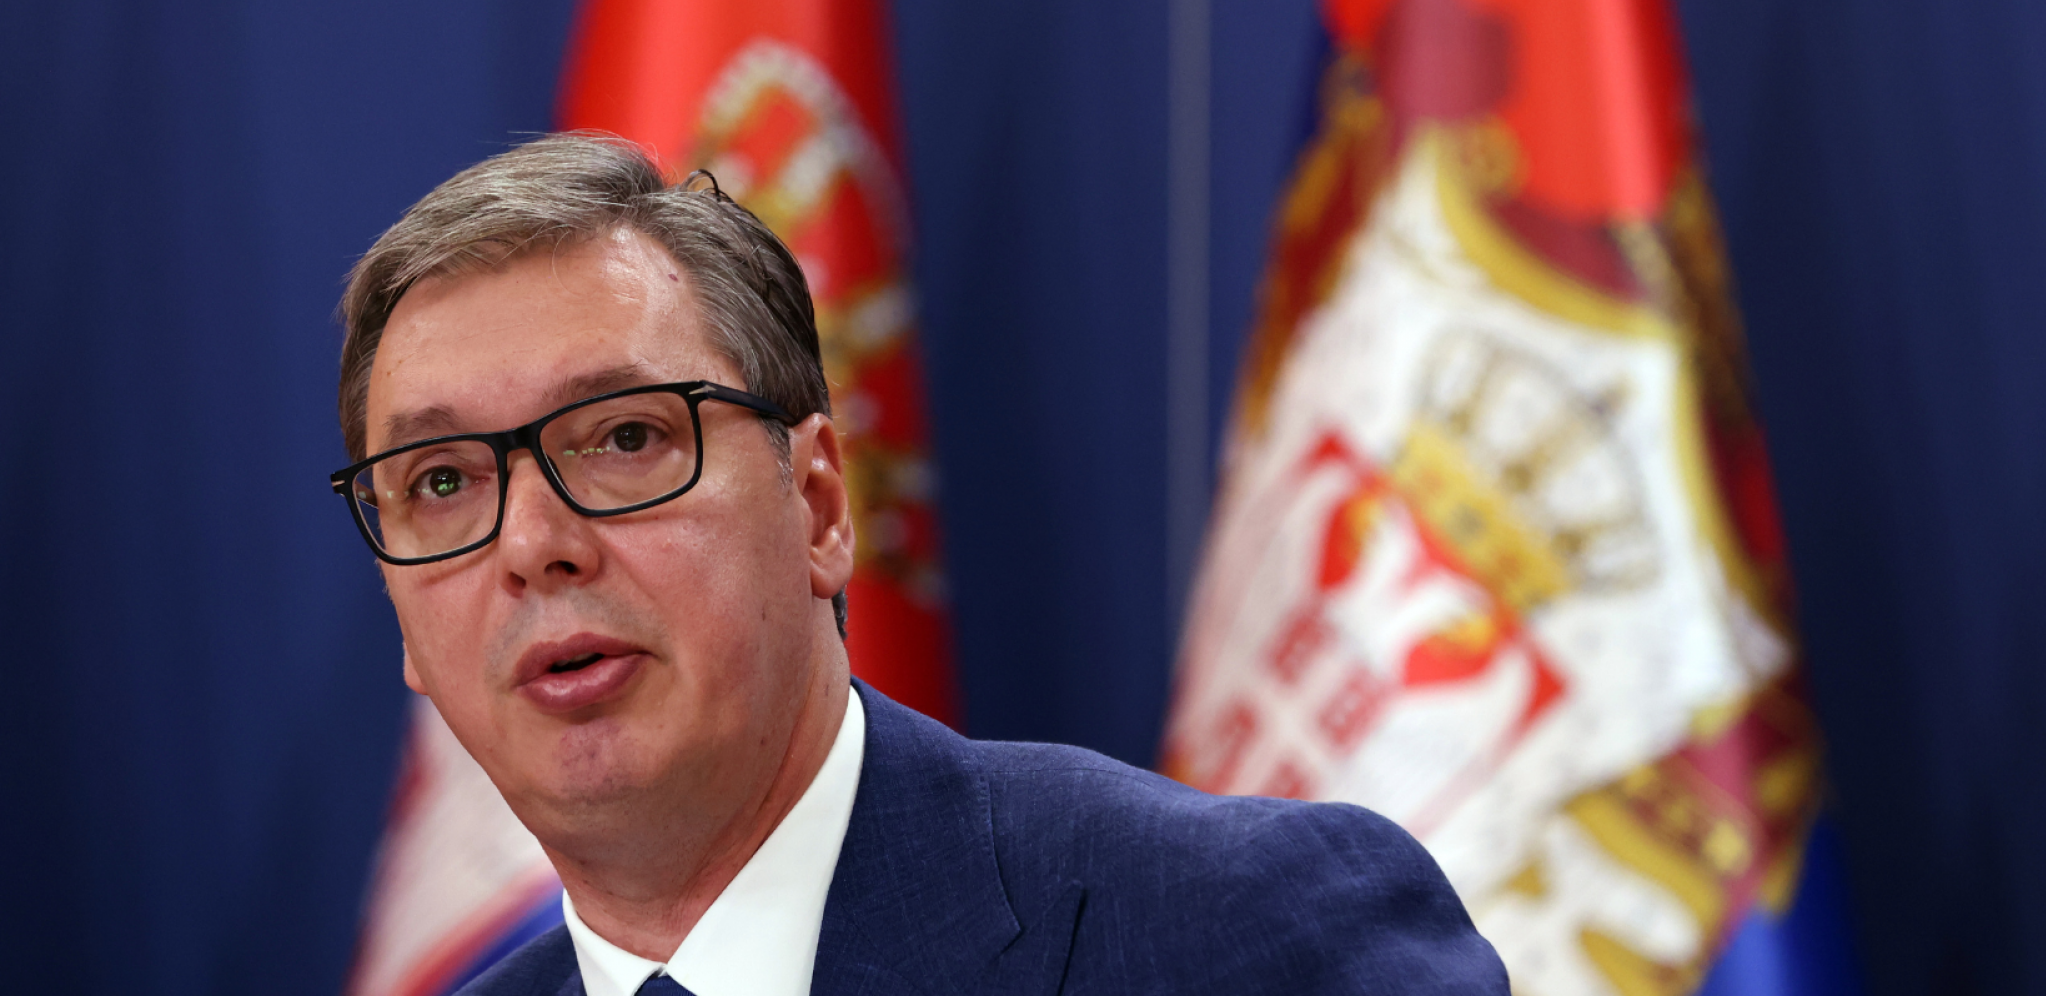 SRPSKA VINA ĆE IĆI U KINU Predsednik Vučić najavio sklapanje velikog ugovora